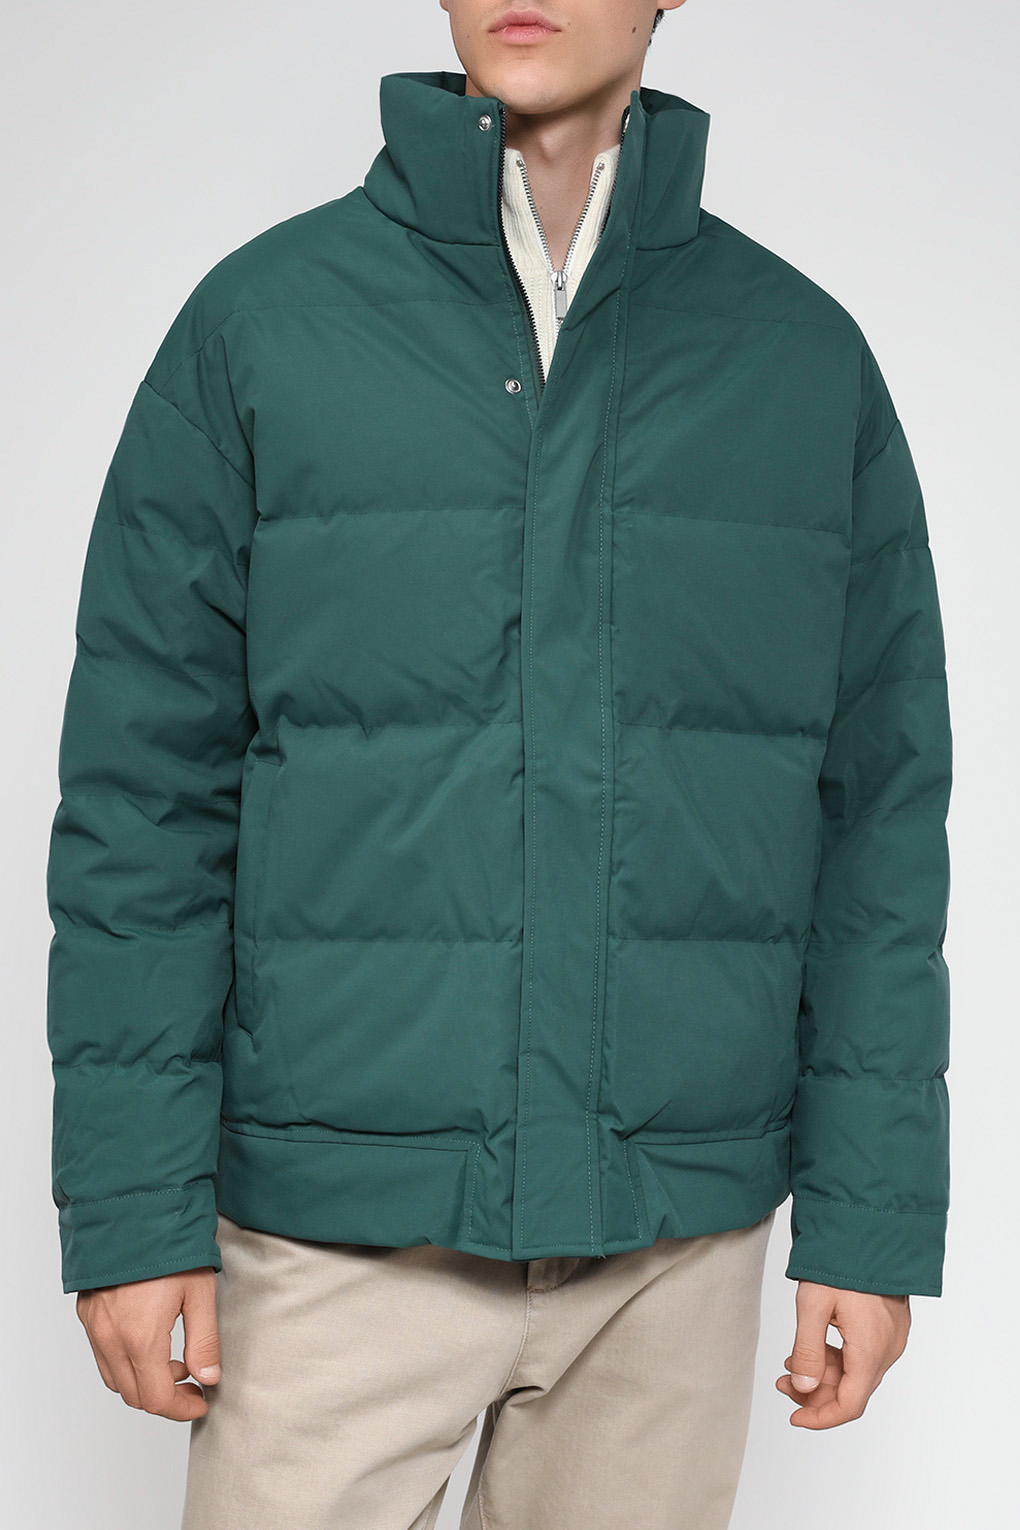 Куртка мужская D.Molina DM23079285-042 зеленая 52 RU